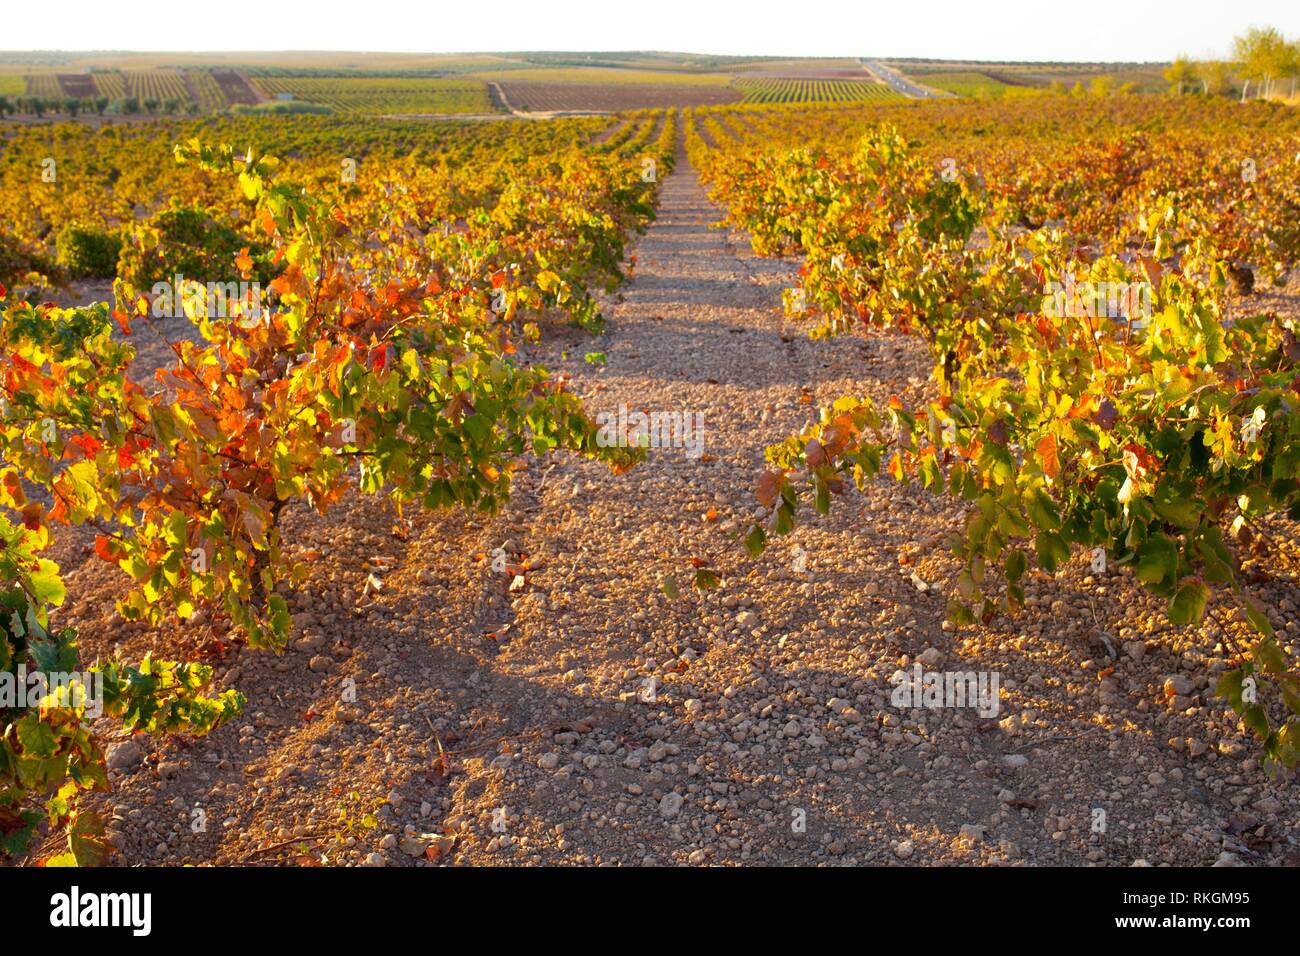 Plantation de vigne dans le cadre de lignes de lumière de soleil octobre à Tierra de Barros, Estrémadure, Espagne. Banque D'Images